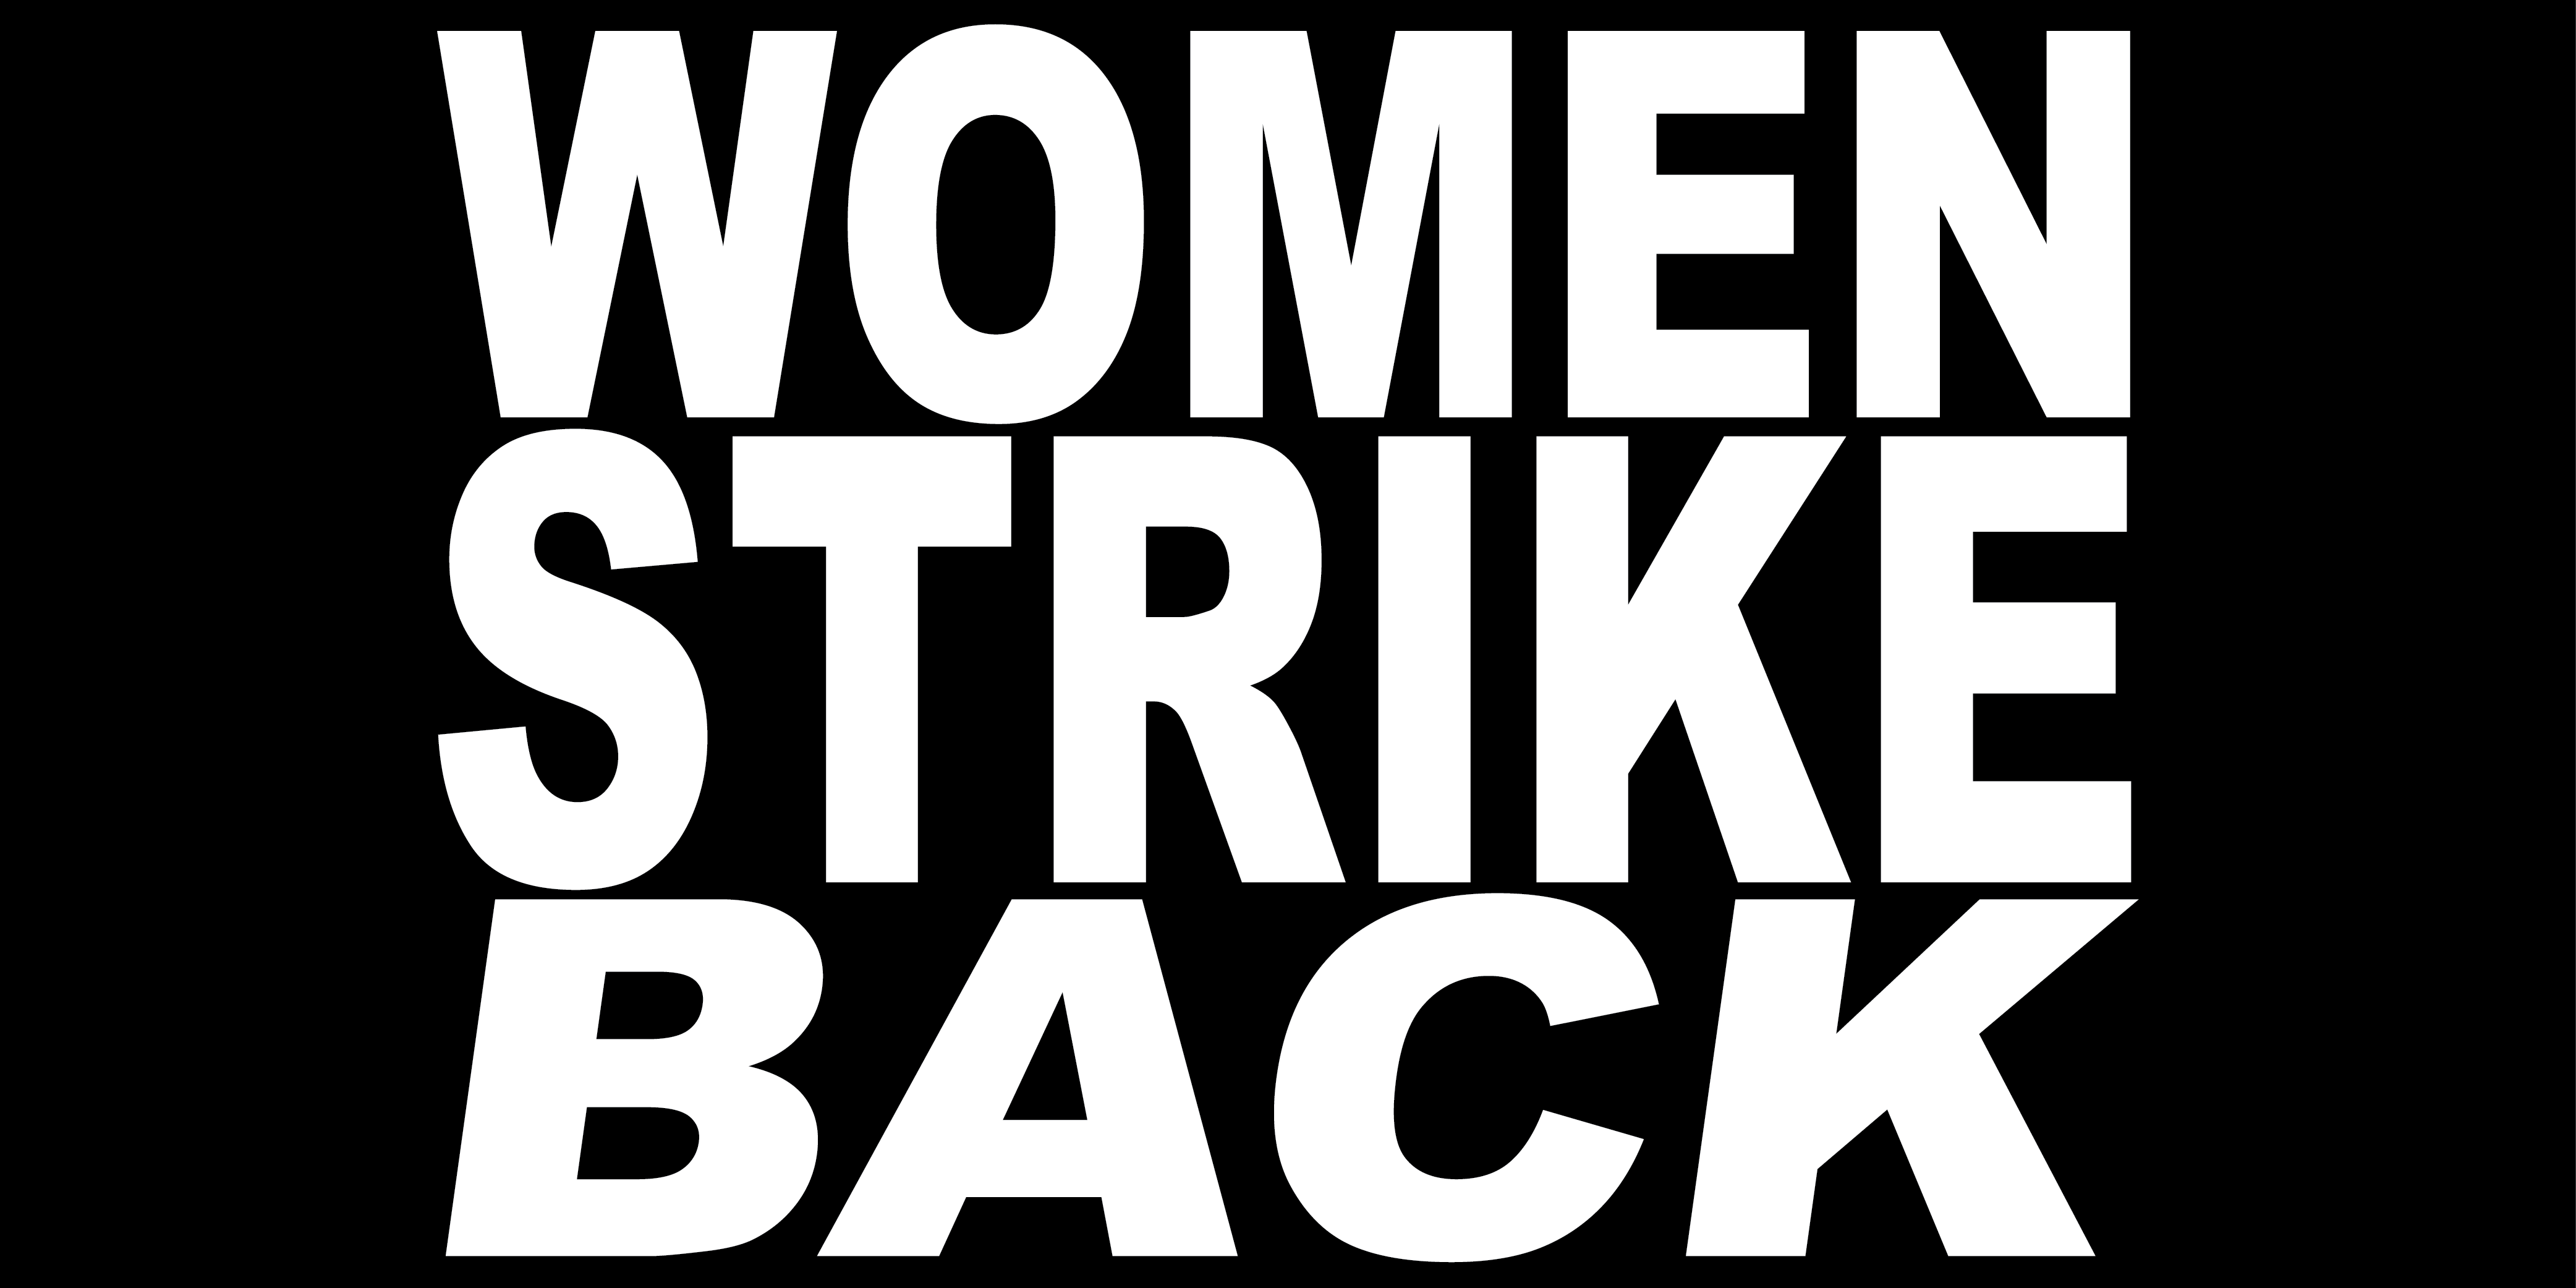 WOMEN STRIKE BACK (ITALICS)